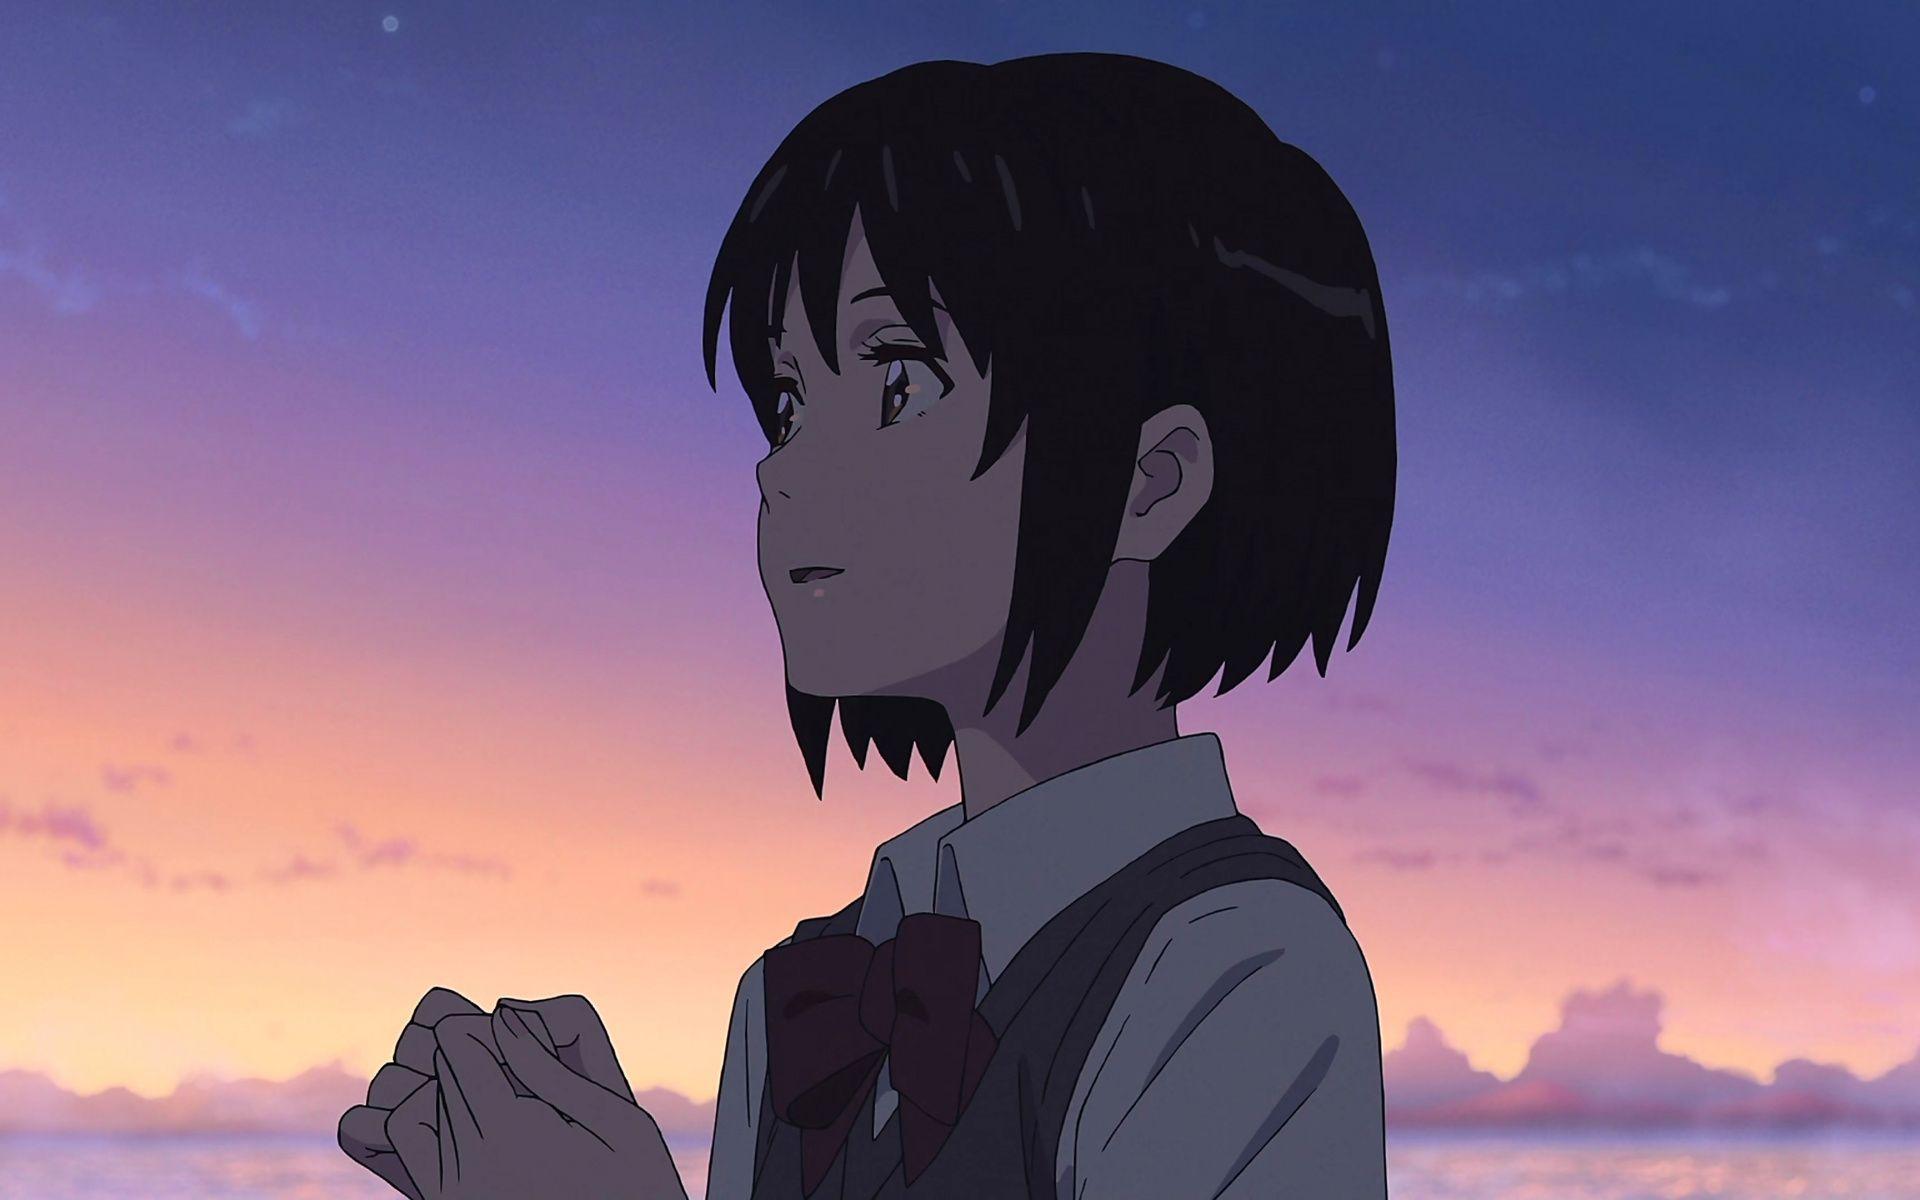 Downaload Cute, Mitsuha Miyamizu, Kimi no Na wa, animated movie